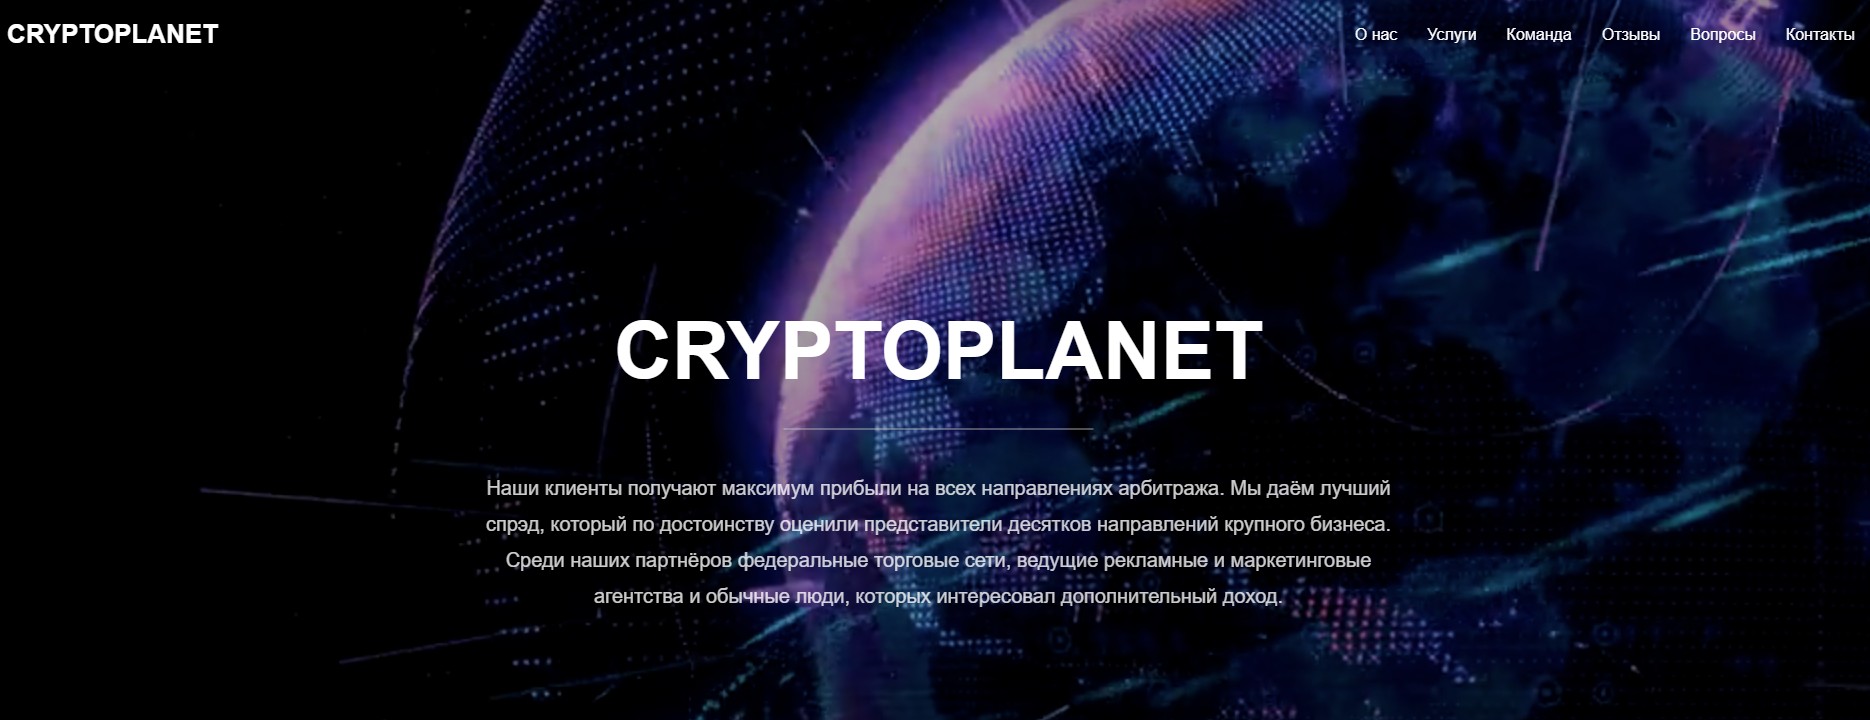 crypto planet обзор проекта